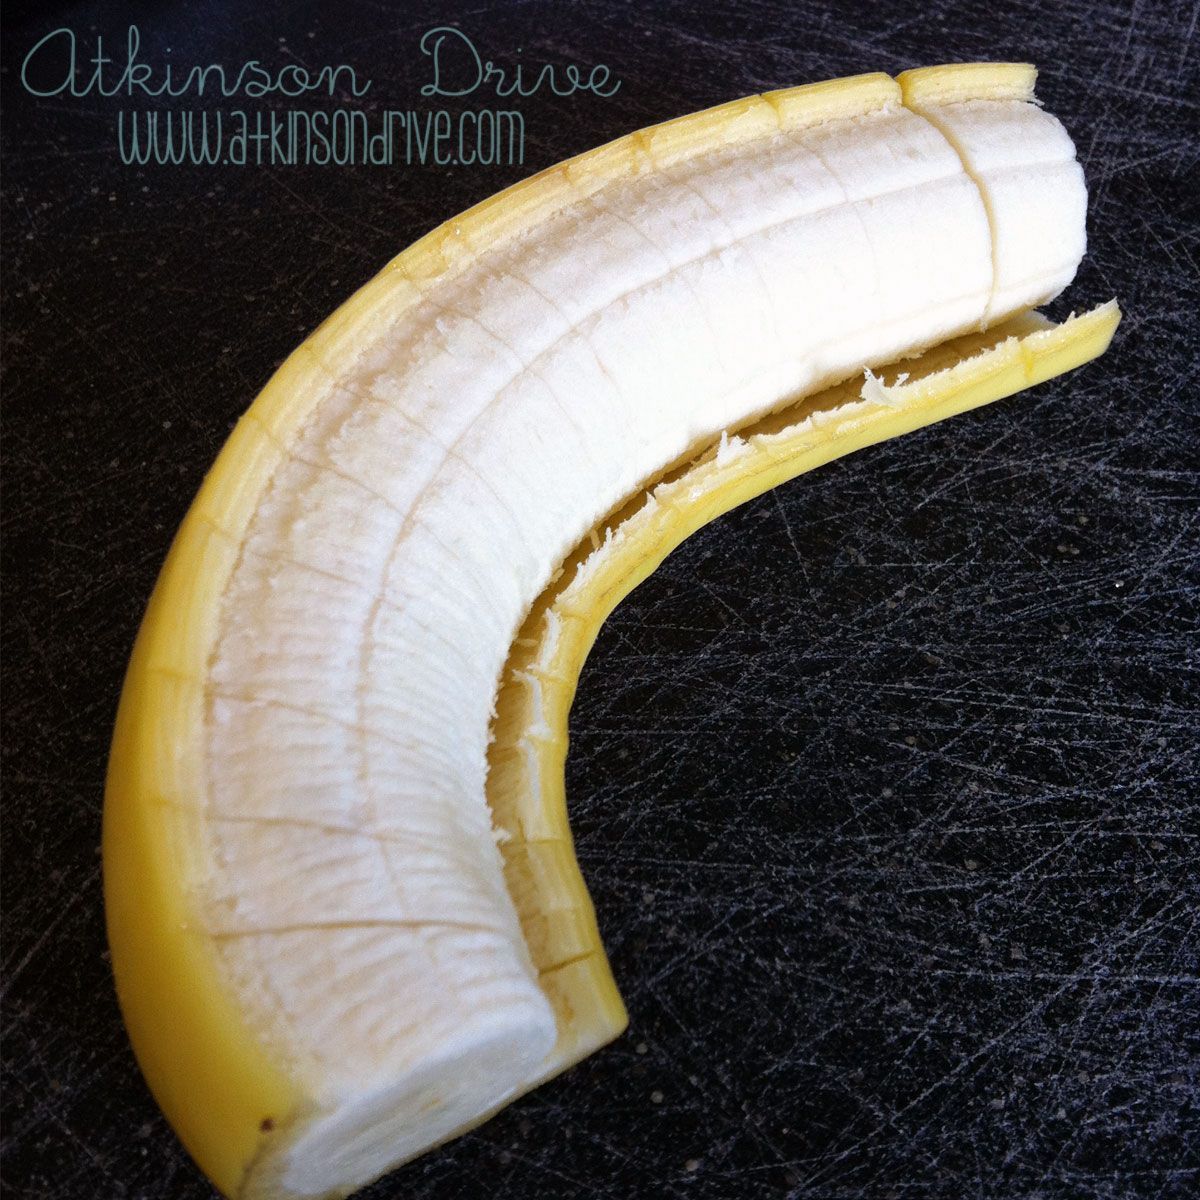 How to Cut & Freeze Bananas | Atkinson Drive